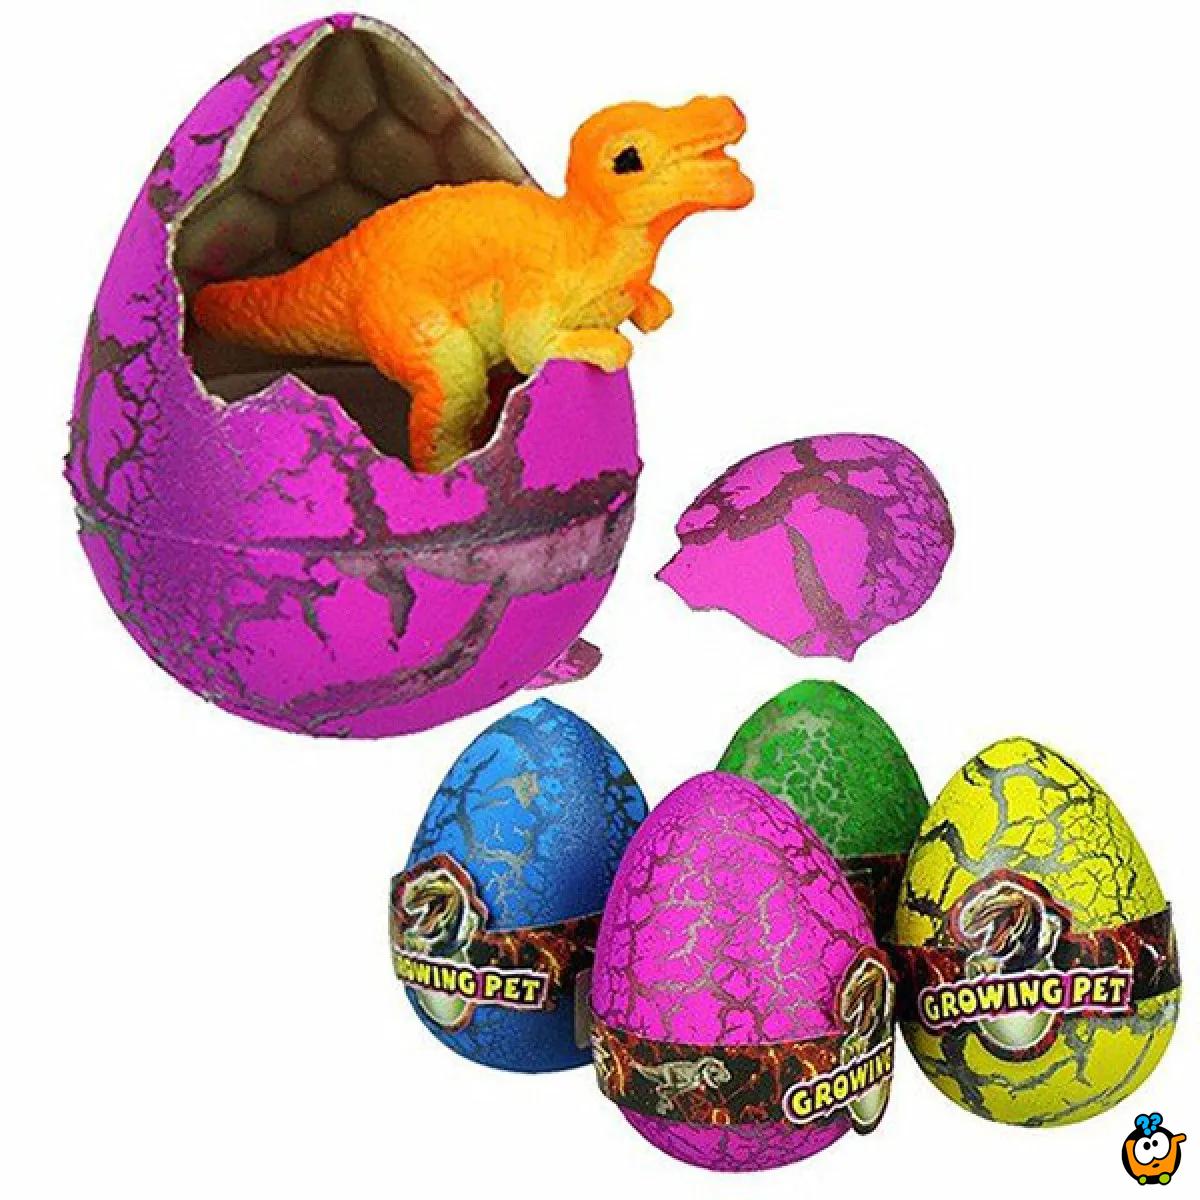 Dinosaur egg - magično jaje iz kojeg poraste dinosaurus